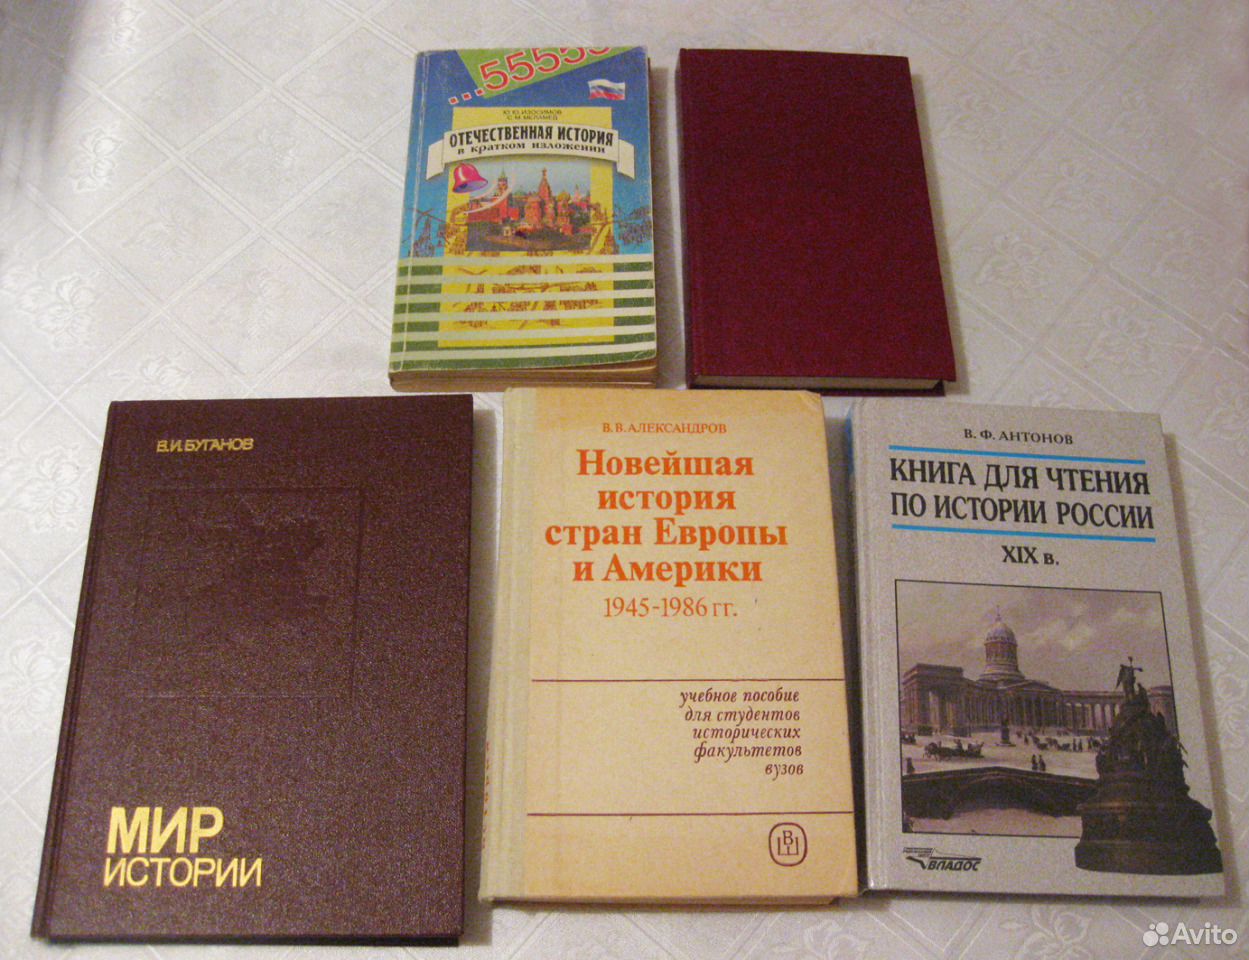 Авито книги рязань. Авито книги. Продажа книг на авито. Авито книги до 1991 г. Книги на авито Красноярск.